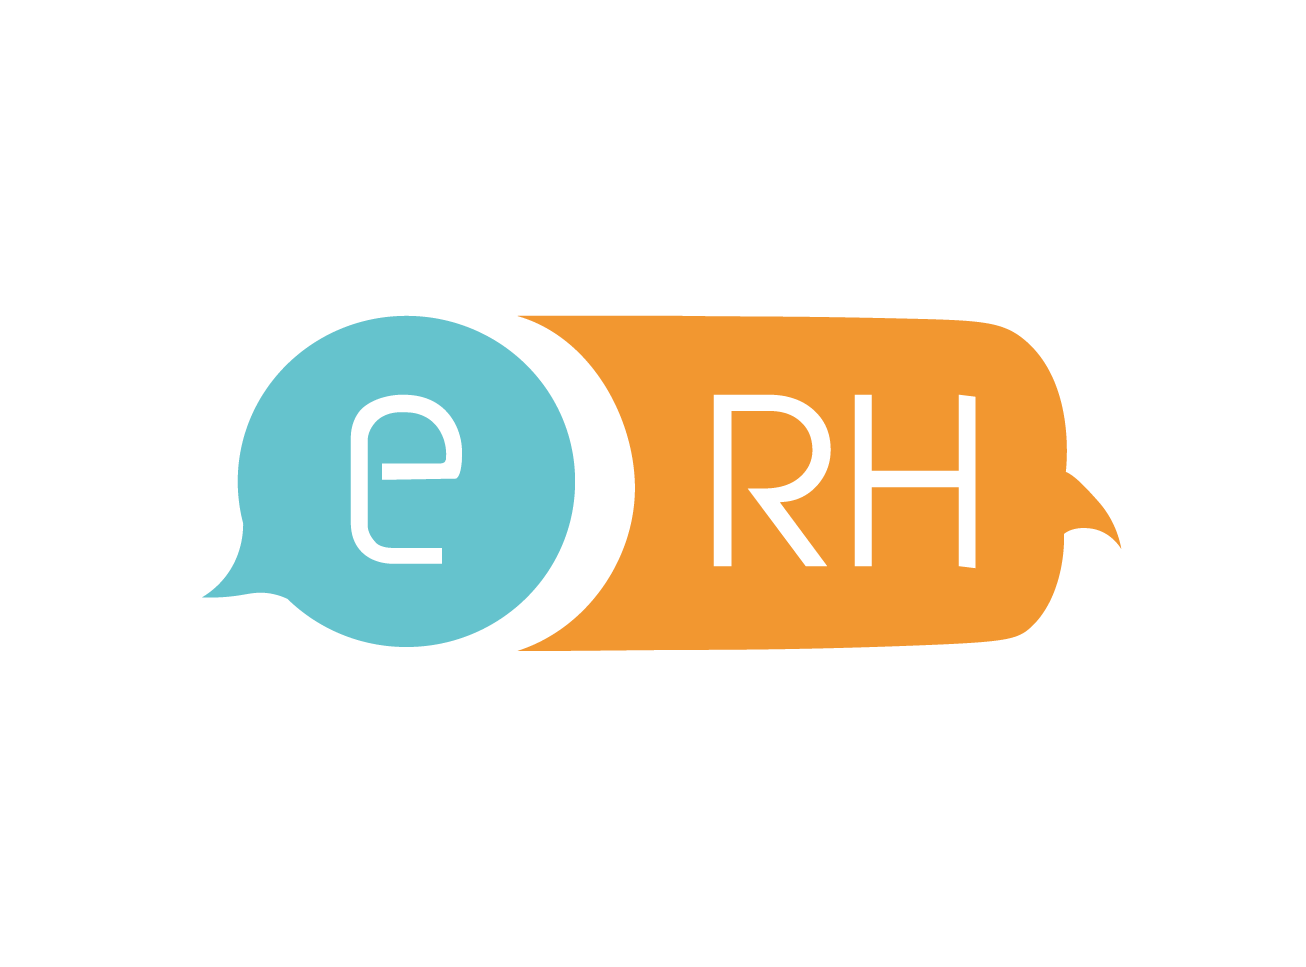 Essentiel rh logo